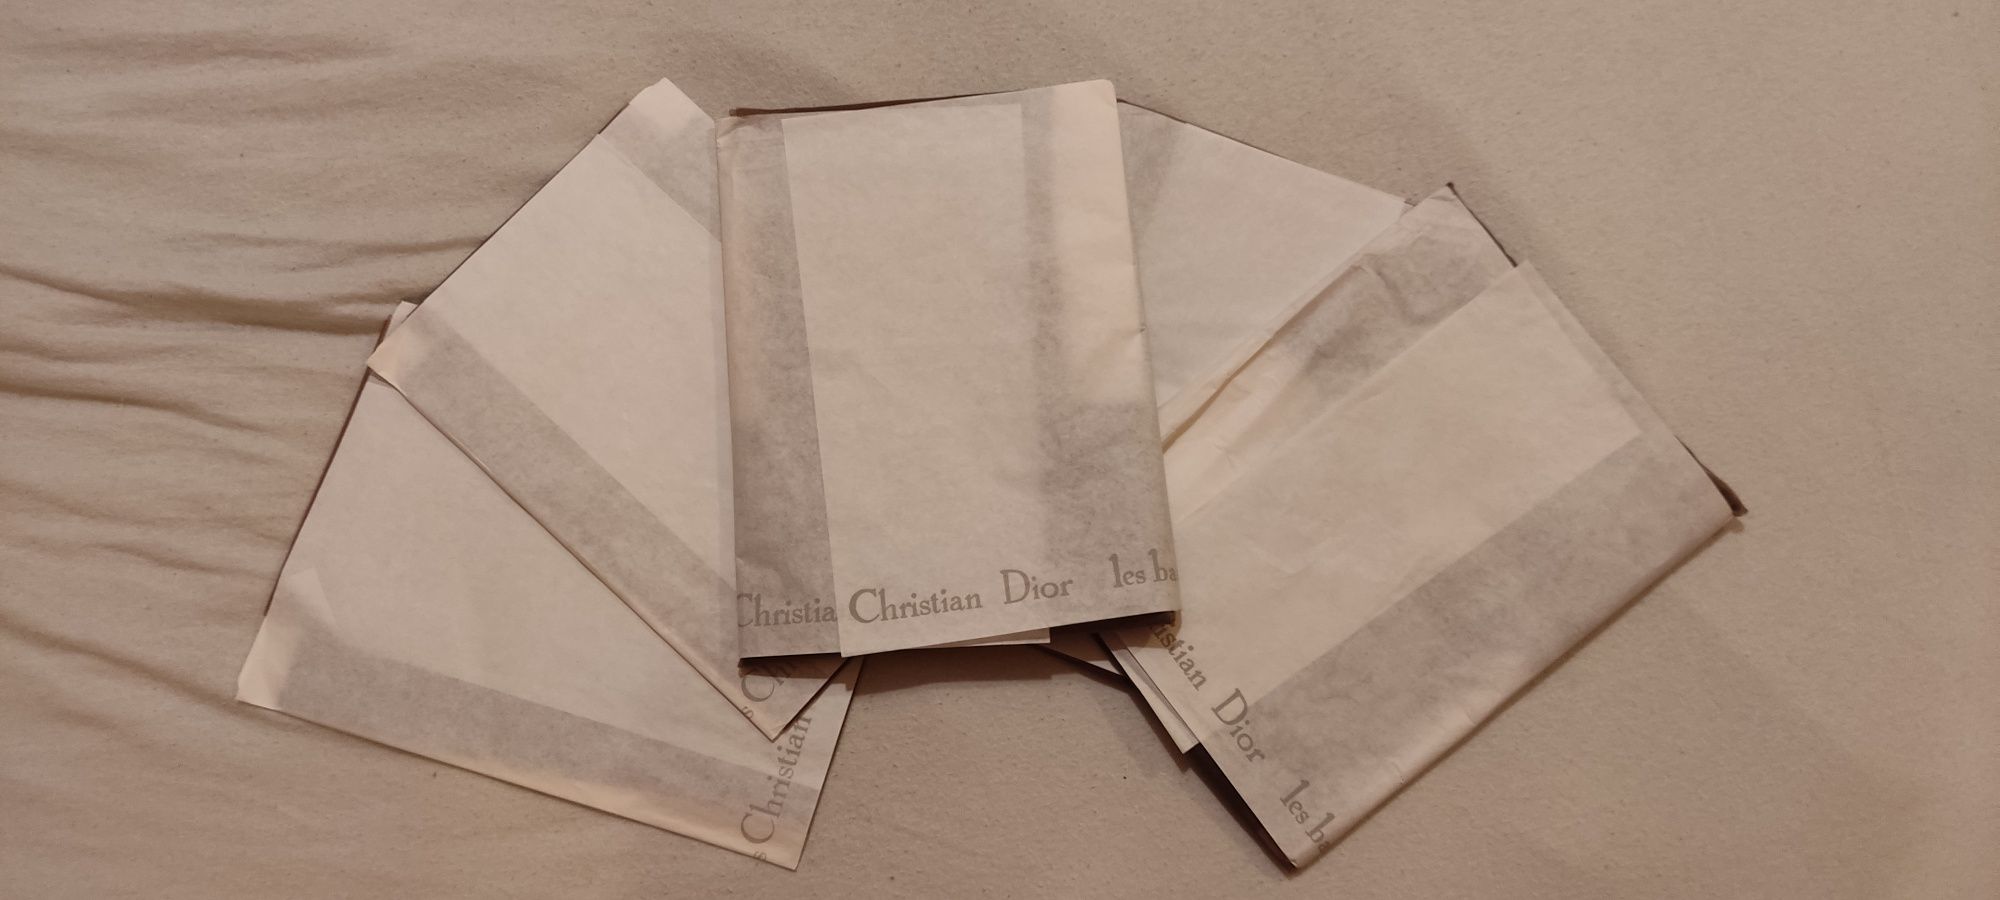 Christian Dior pończochy nylonowe